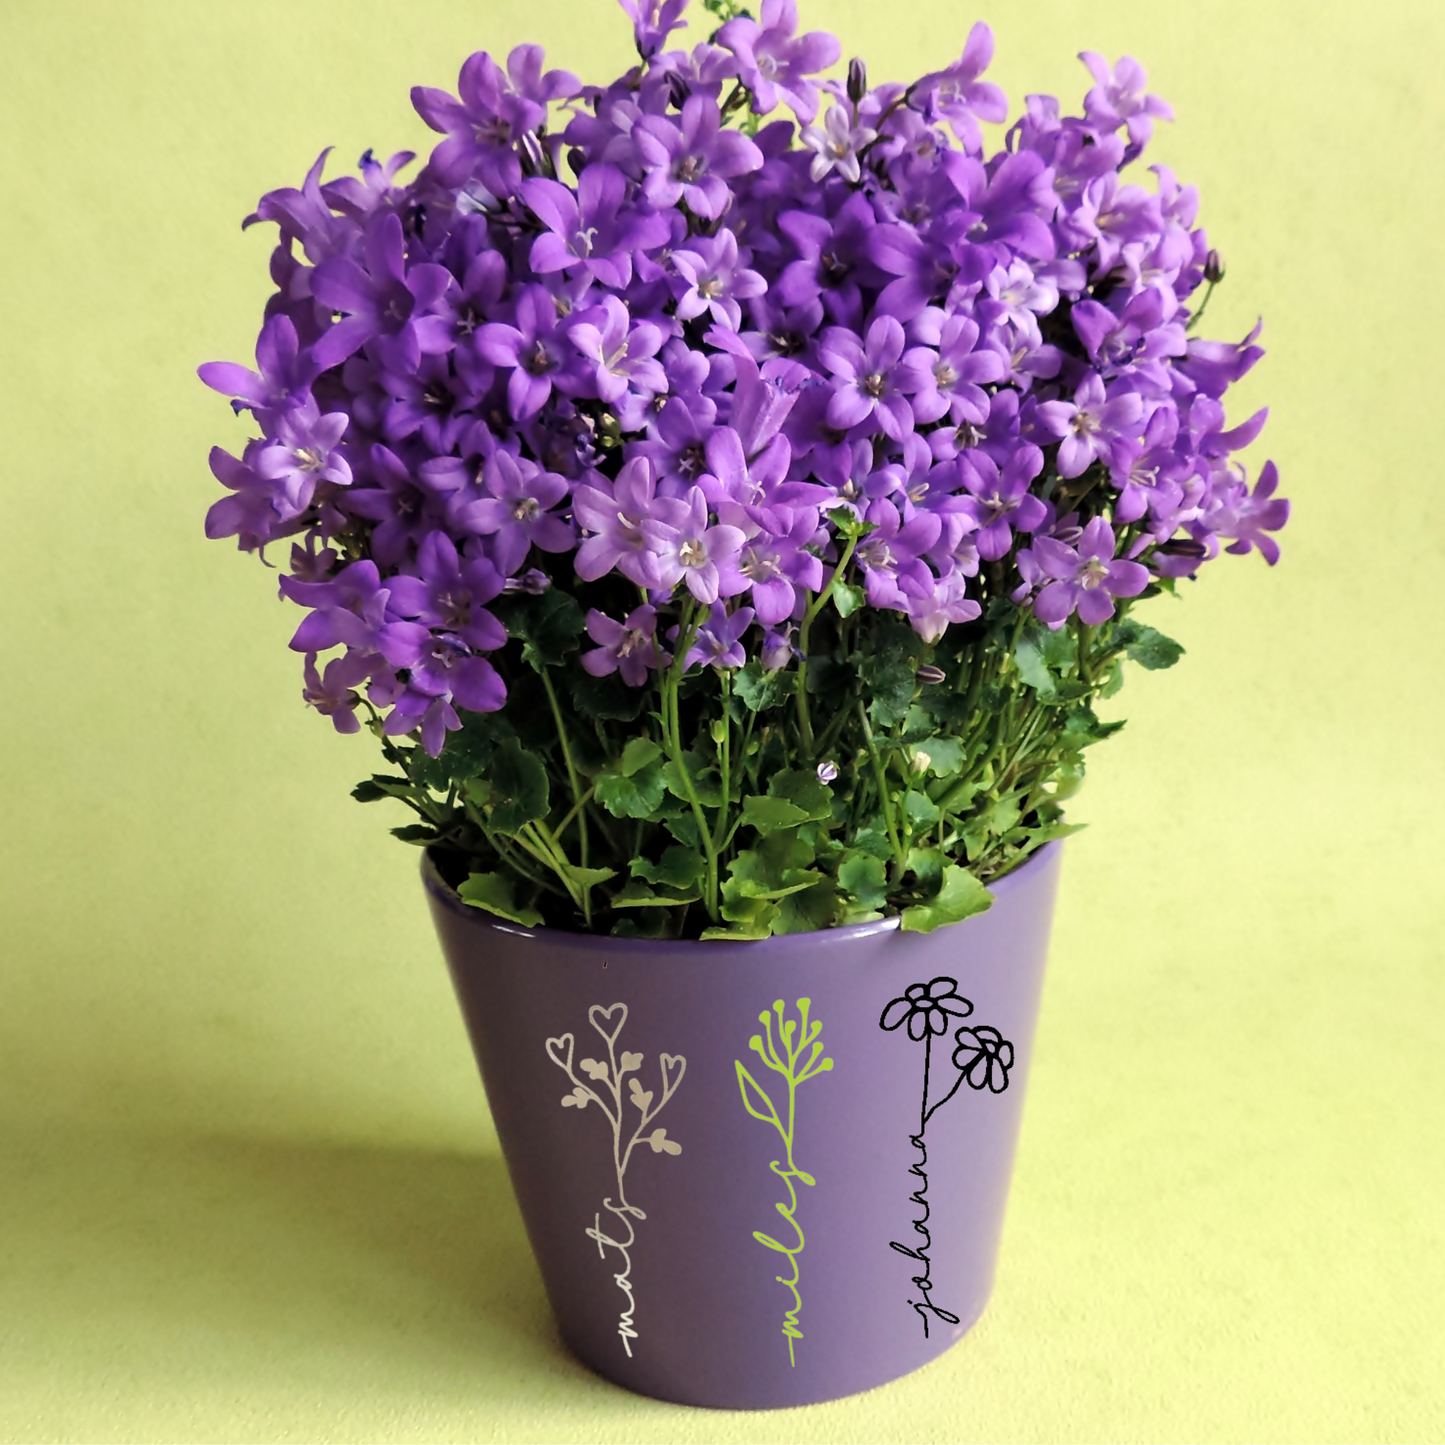 Aufkleber - personalisierter Schriftzug - Blume und Name - Abschiedsgeschenk für Lehrer/in oder Erzieher/in - für Blumentopf oder Glas